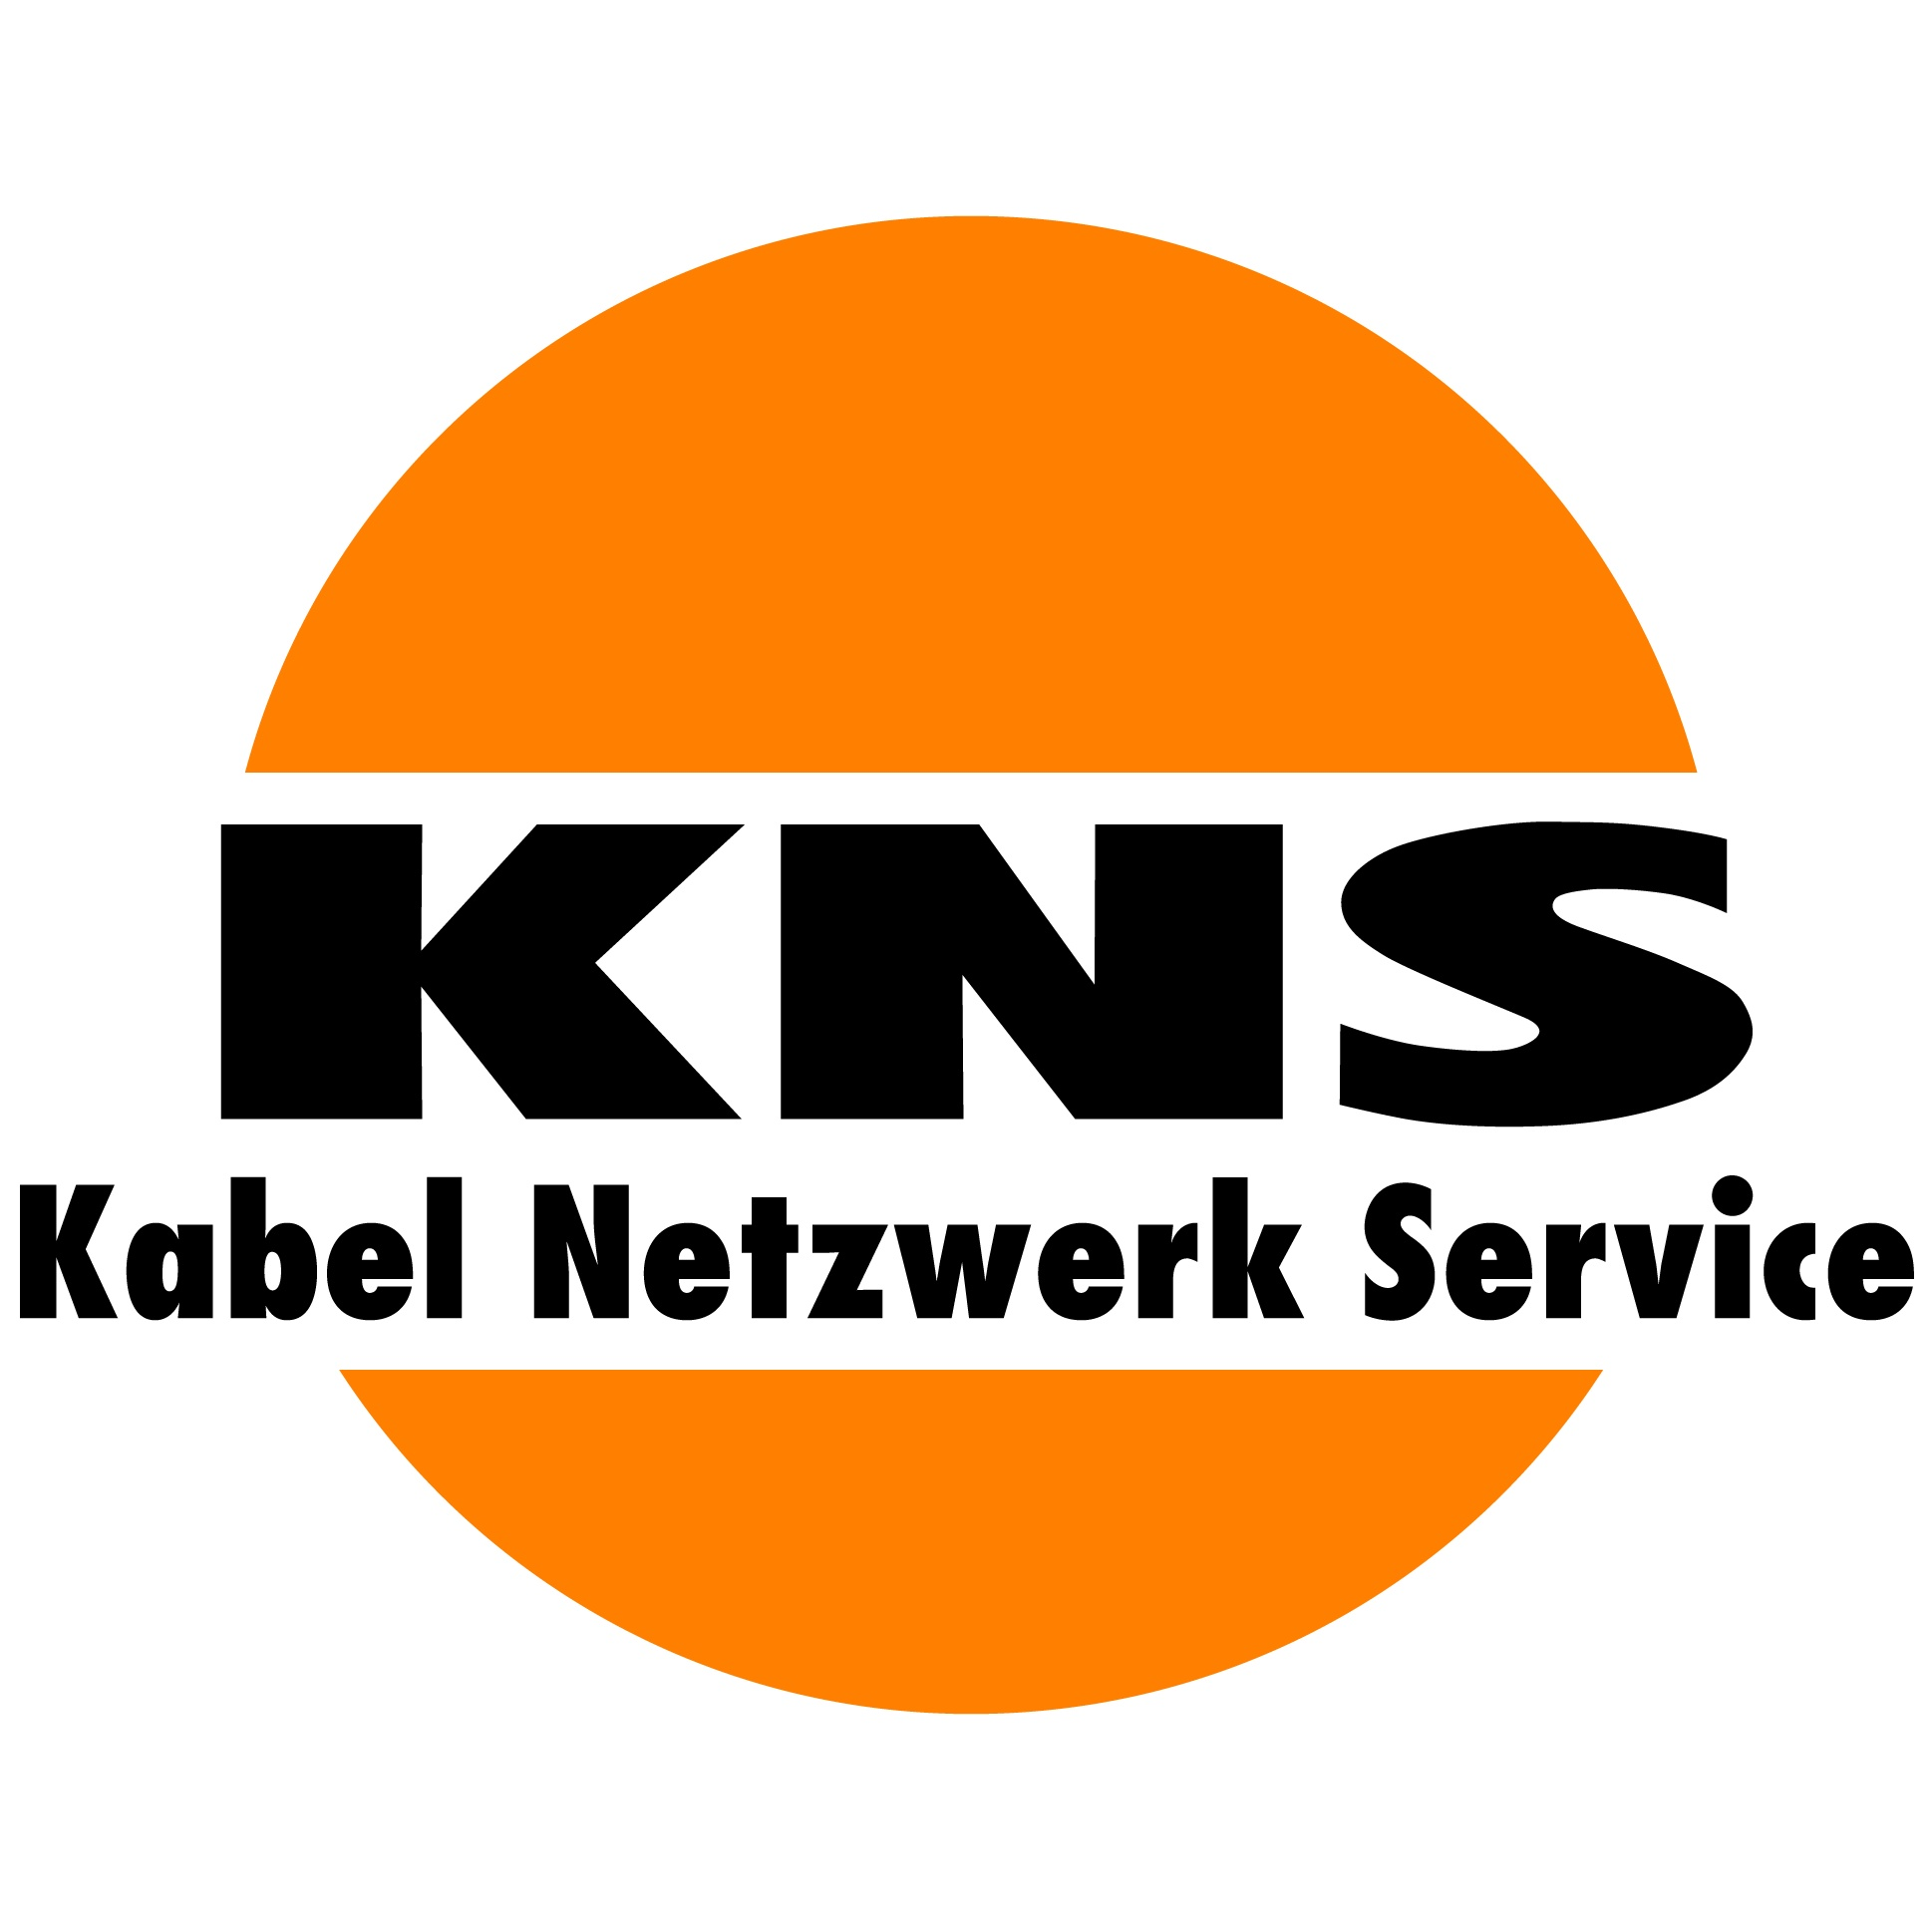 KNS Kabel Netzwerk Service GmbH